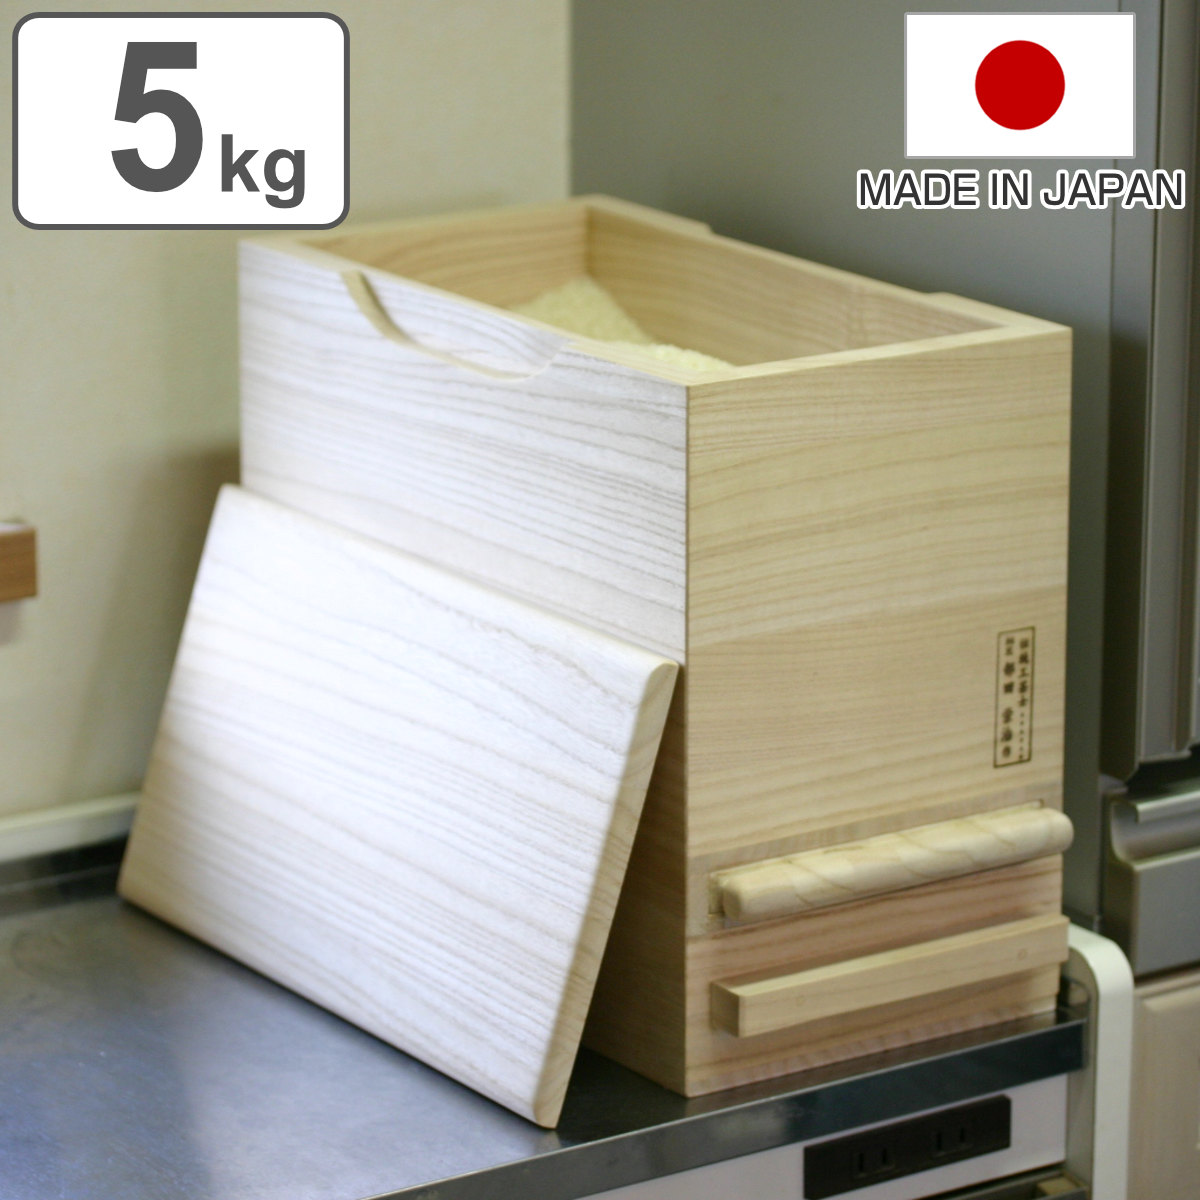 米びつ 計量機能付き 桐製 5kg 1合計量